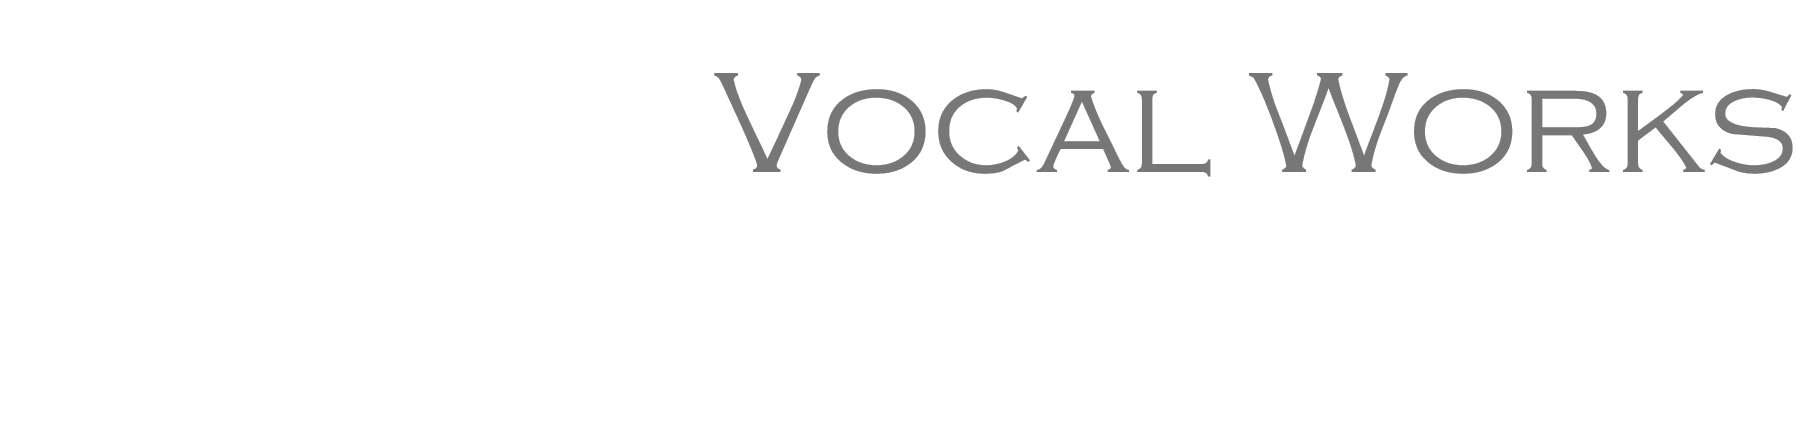 Vocal Works